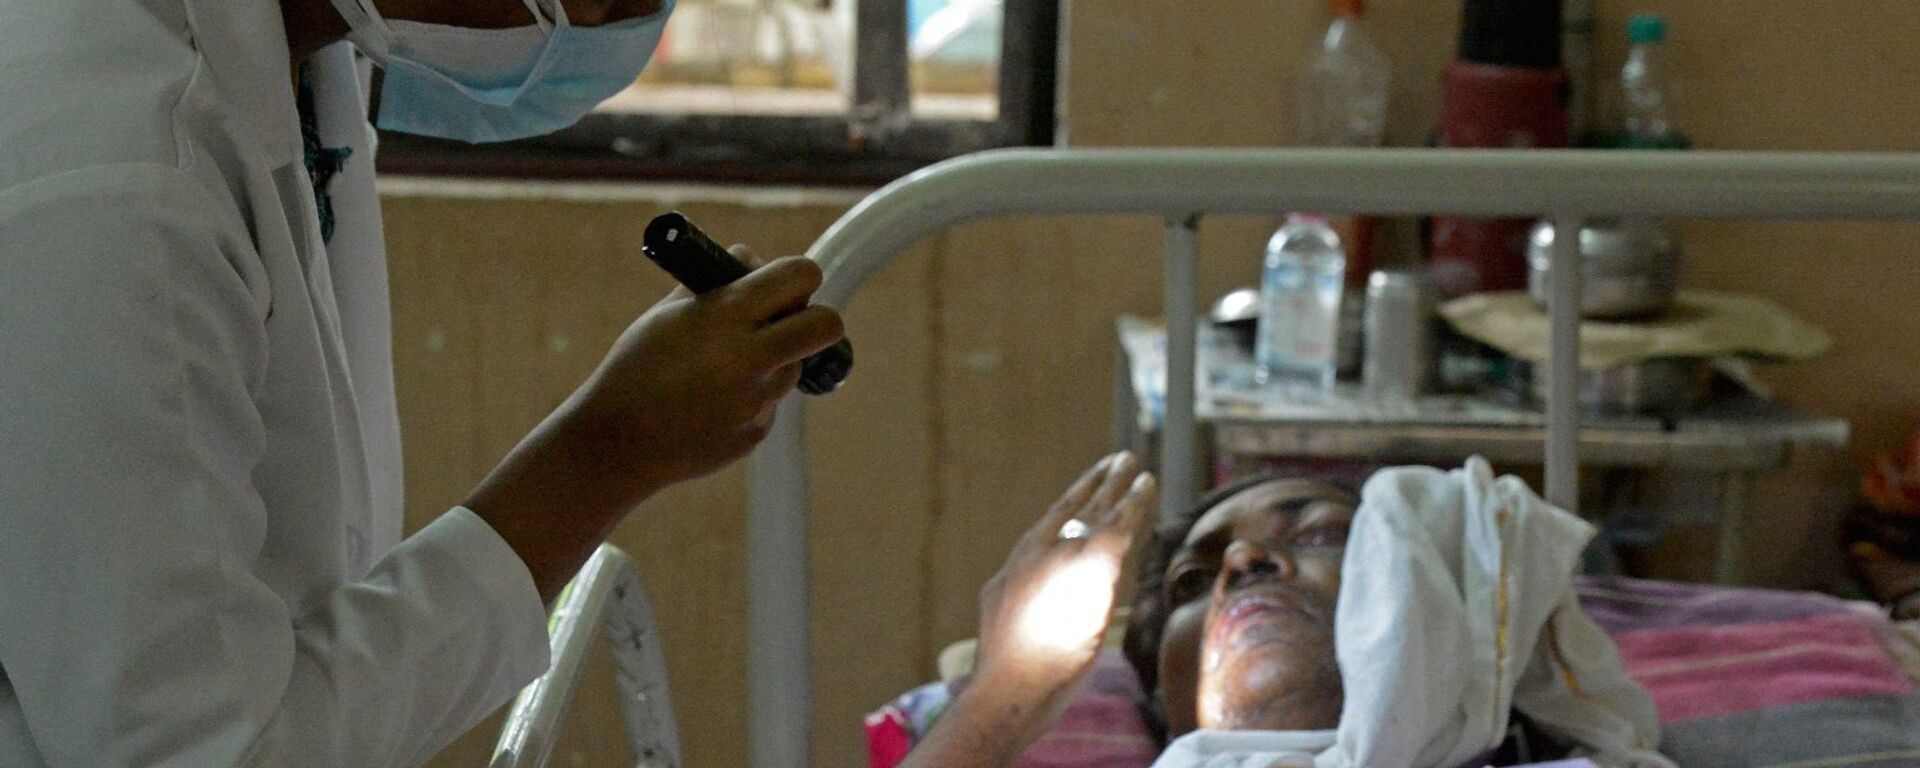 طبيب يفحص مريضا تعافى من فيروس كورونا المستجد وأصيب الآن بالفطر الأسود في جناح بمستشفى حكومي في حيدر أباد، الهند، 21 مايو/ أيار 2021. - سبوتنيك عربي, 1920, 21.05.2021